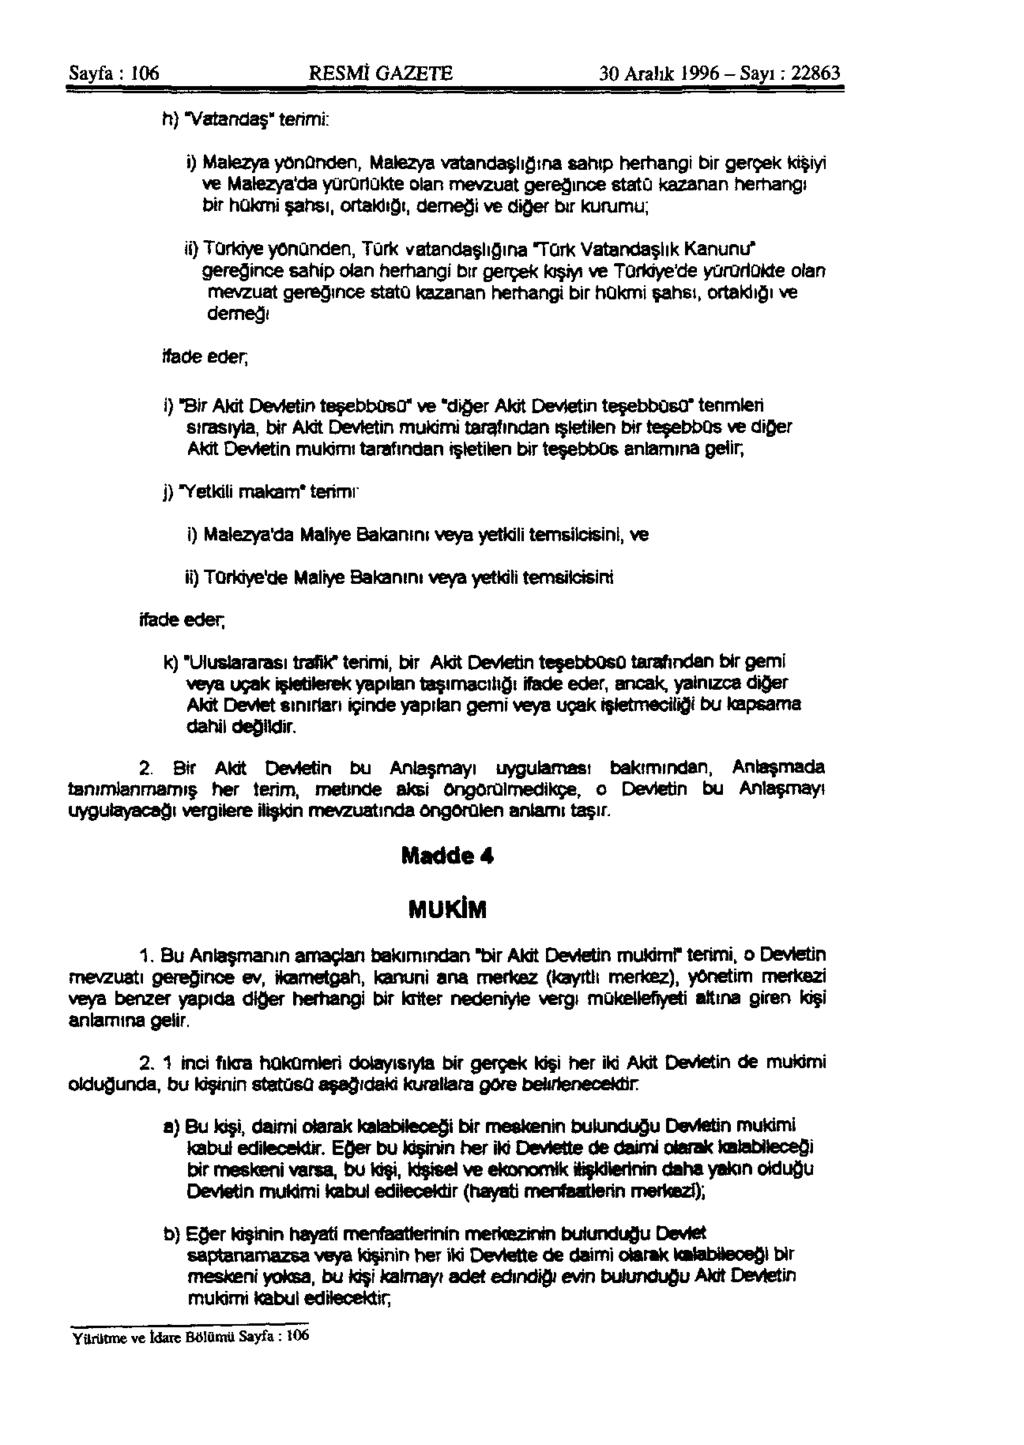 Sayfa: 106 RESMÎ GAZETE 30 Aralık 1996 - Sayı: 22863 h) "Vatandaş" terimi: i) Malezya yününden, Malezya vatandaşlığına sahip herhangi bir gerçek kişiyi ve Malezya'da yürürlükte olan mevzuat gereğince